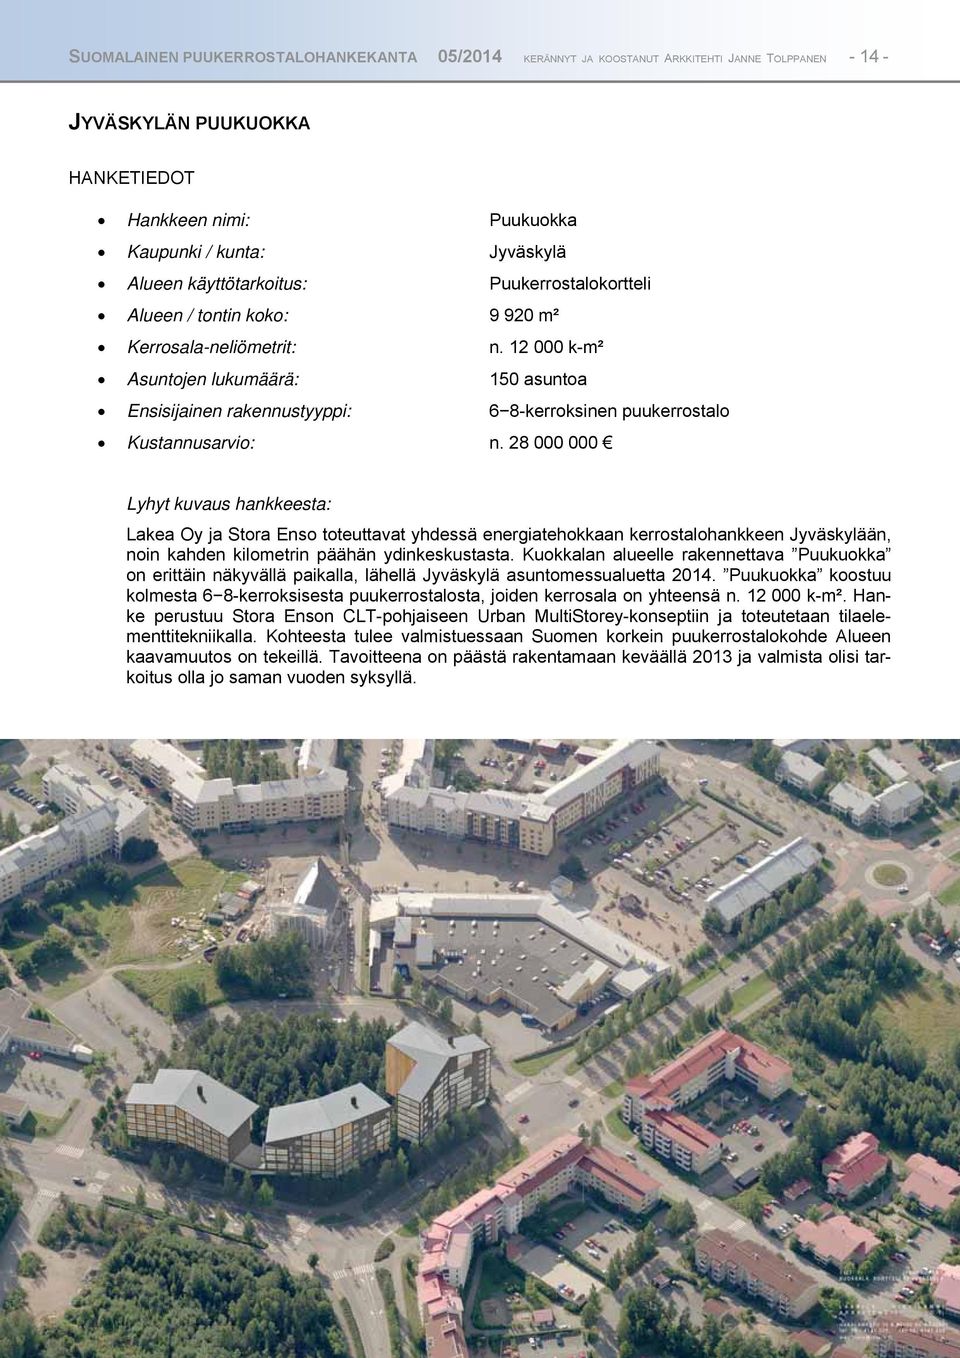 12 000 k-m² Asuntojen lukumäärä: 150 asuntoa Ensisijainen rakennustyyppi: 68-kerroksinen puukerrostalo Kustannusarvio: n.